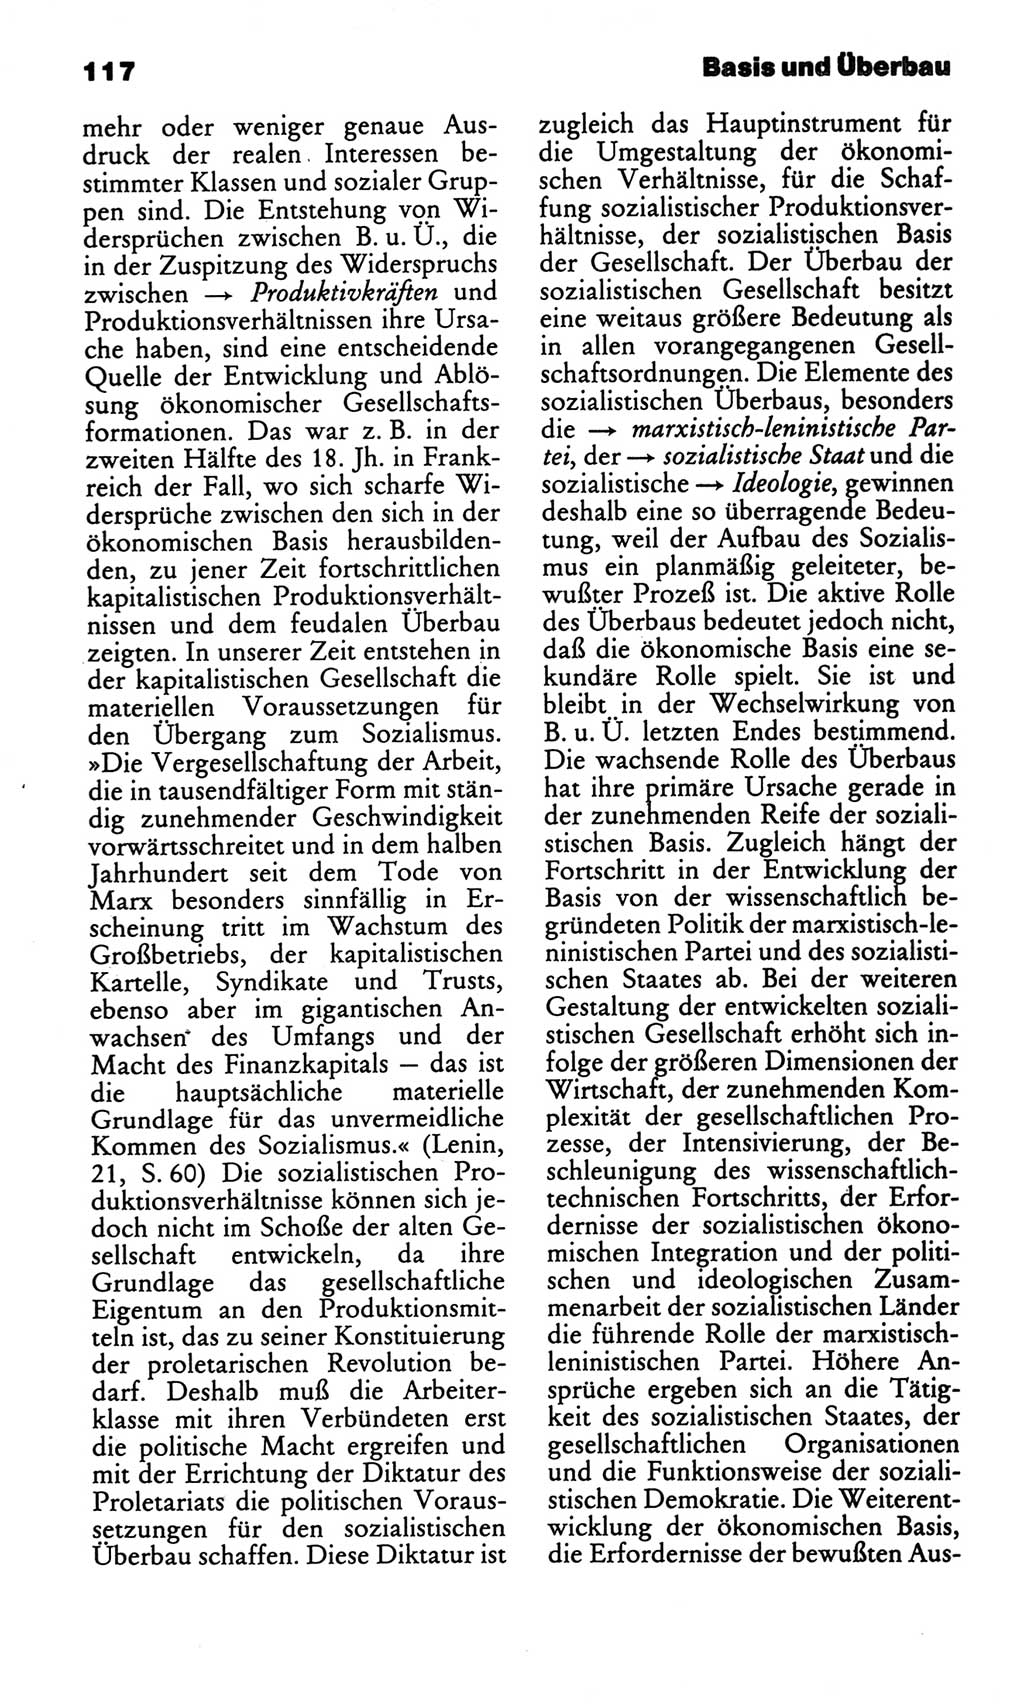 Kleines politisches Wörterbuch [Deutsche Demokratische Republik (DDR)] 1986, Seite 117 (Kl. pol. Wb. DDR 1986, S. 117)